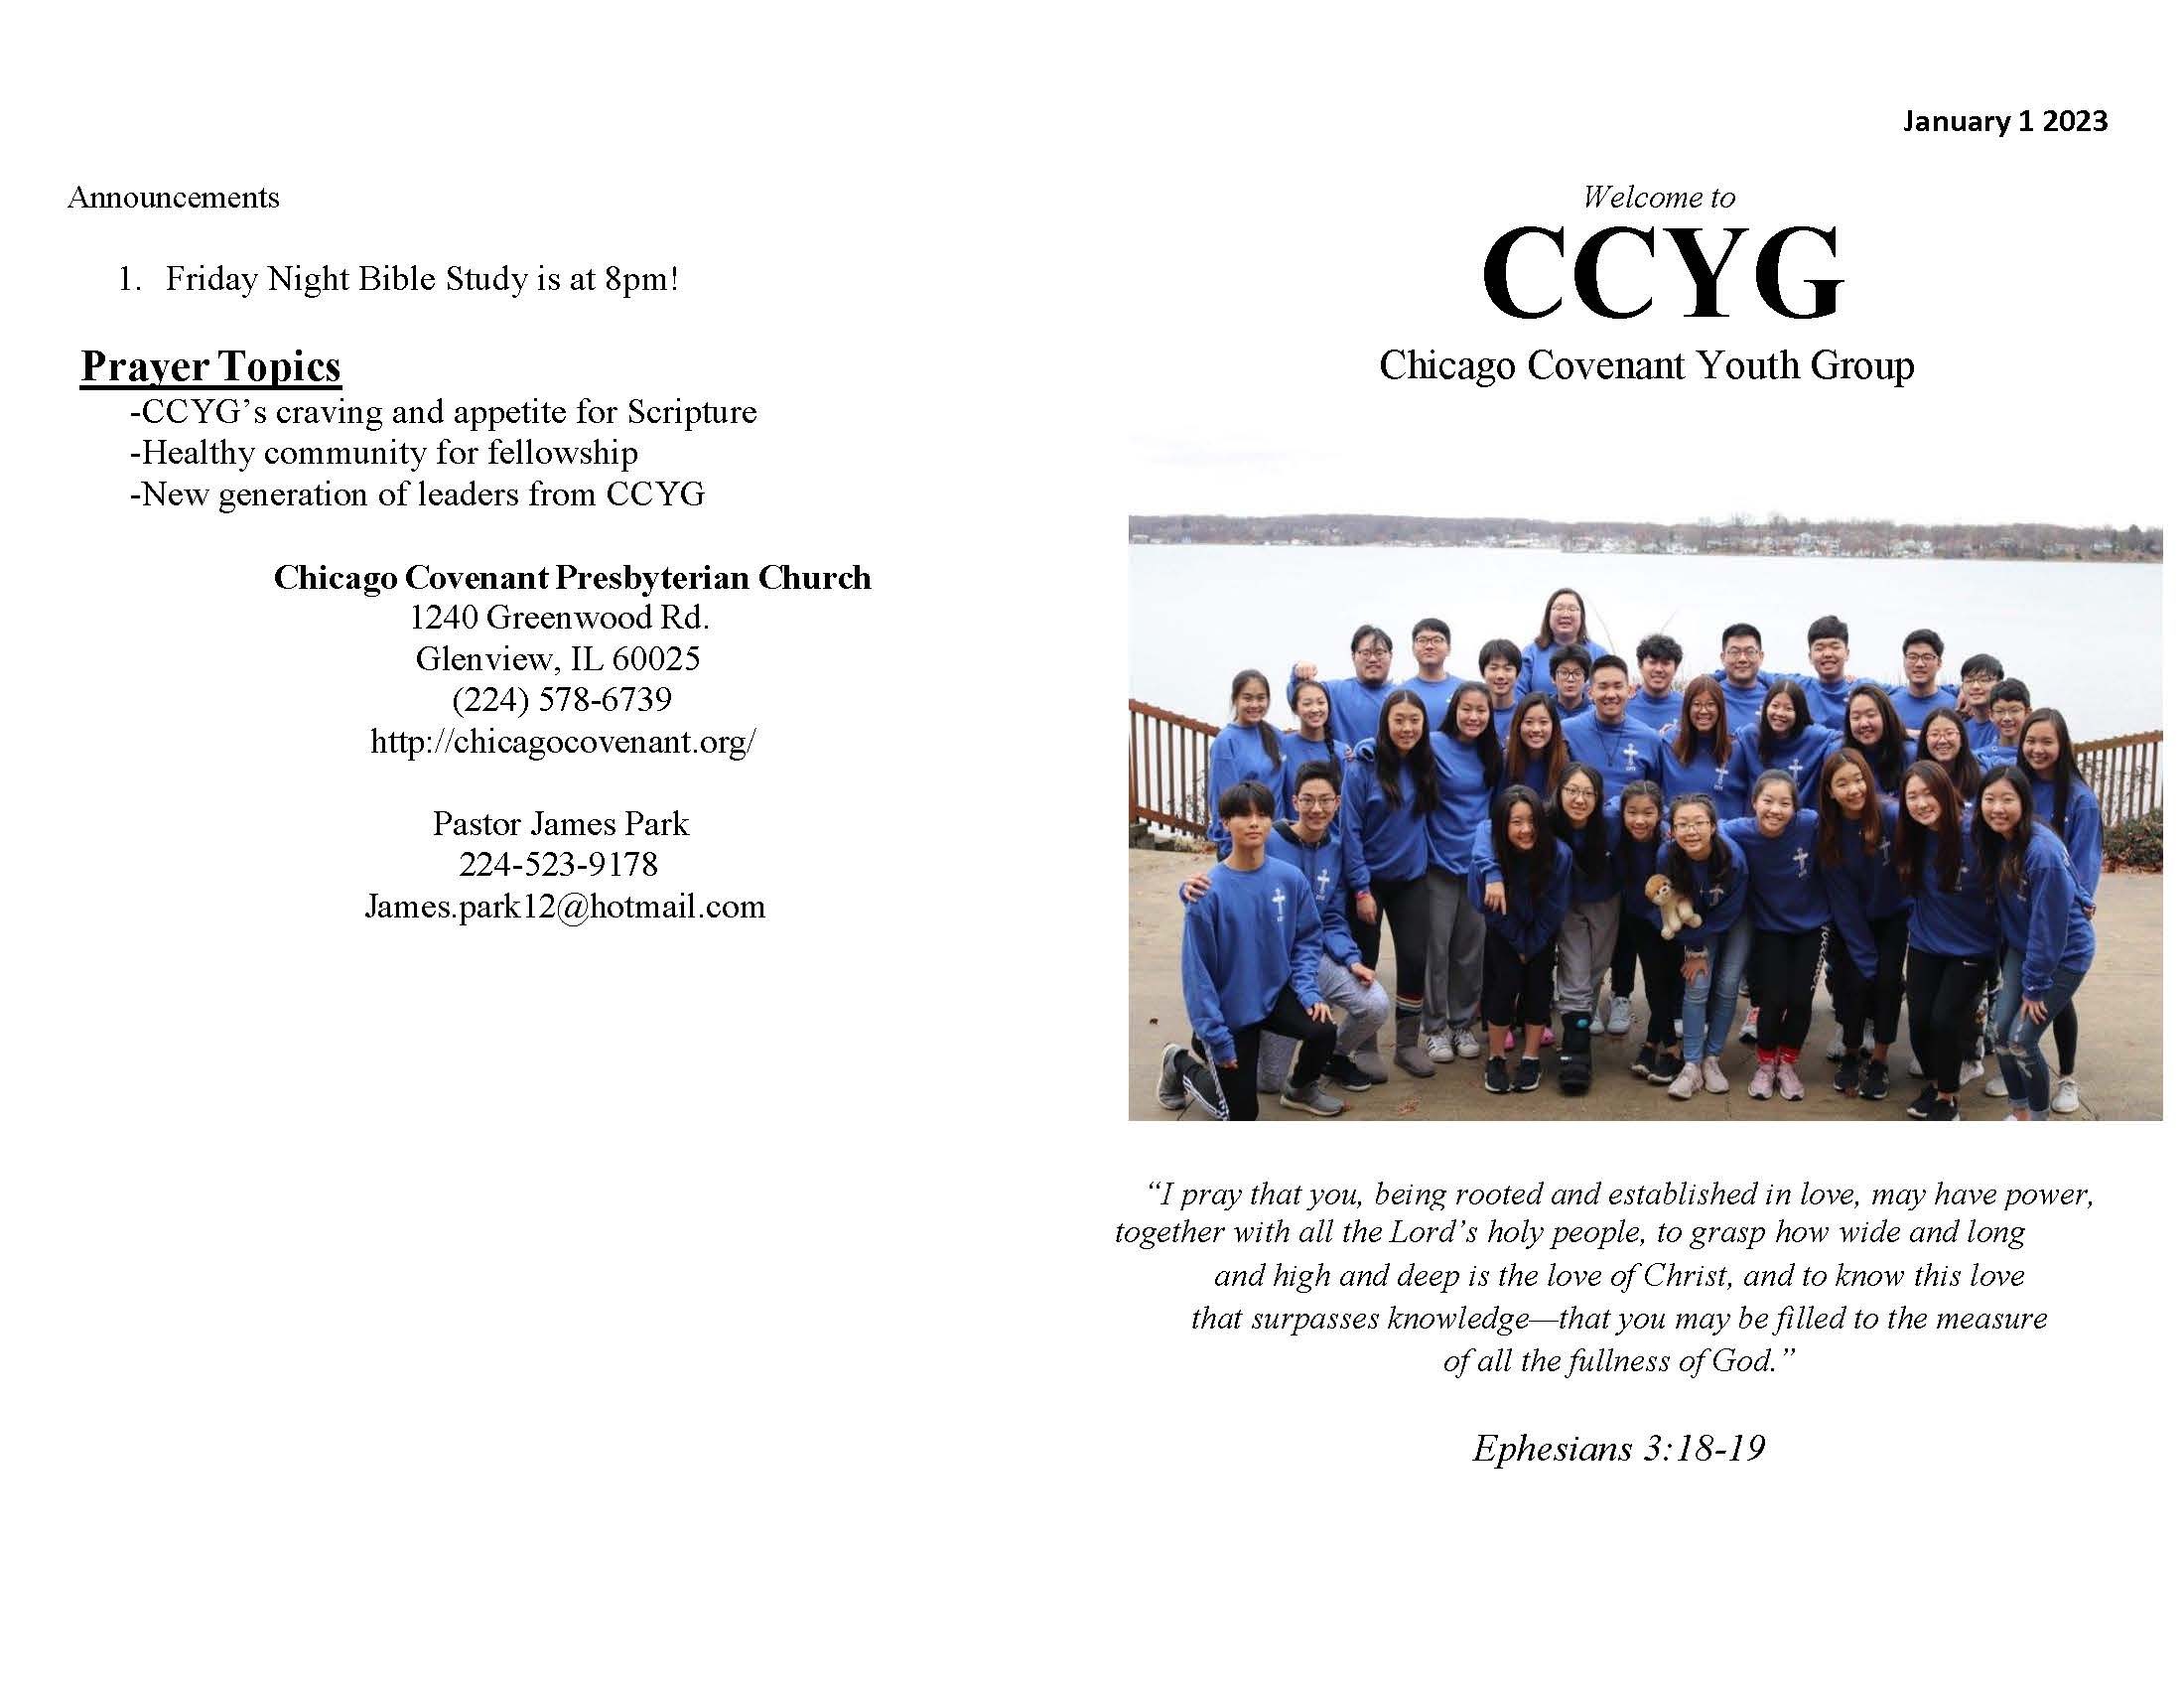 CCYG Bulletin 010123_Page_1.jpg